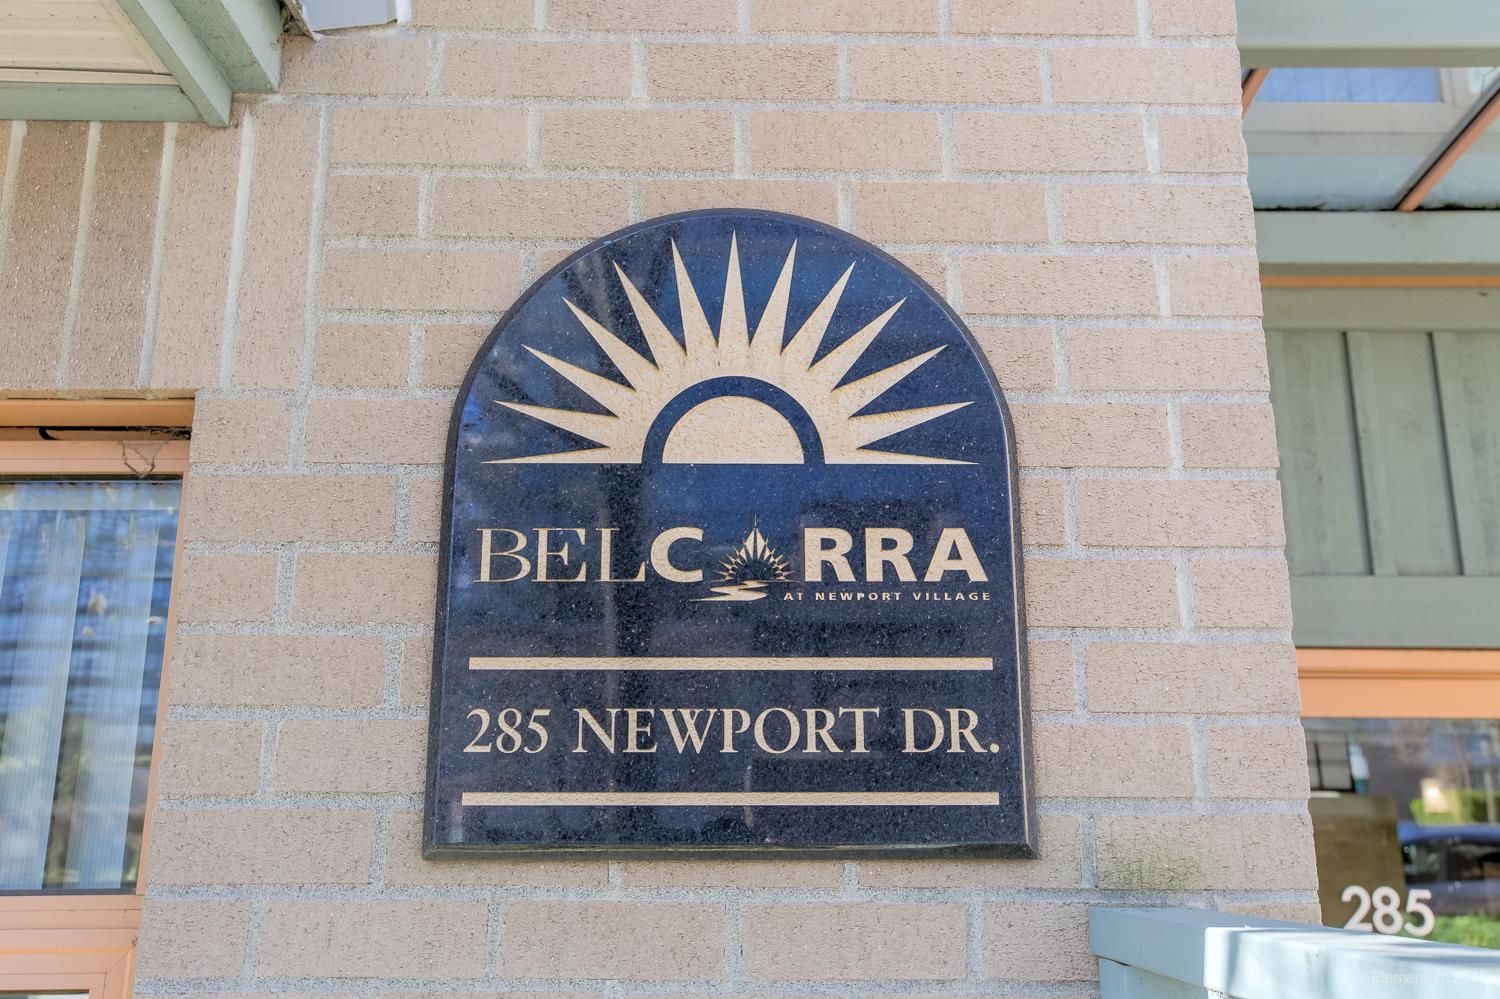 Welcome to the Belcarra @ Newport Village